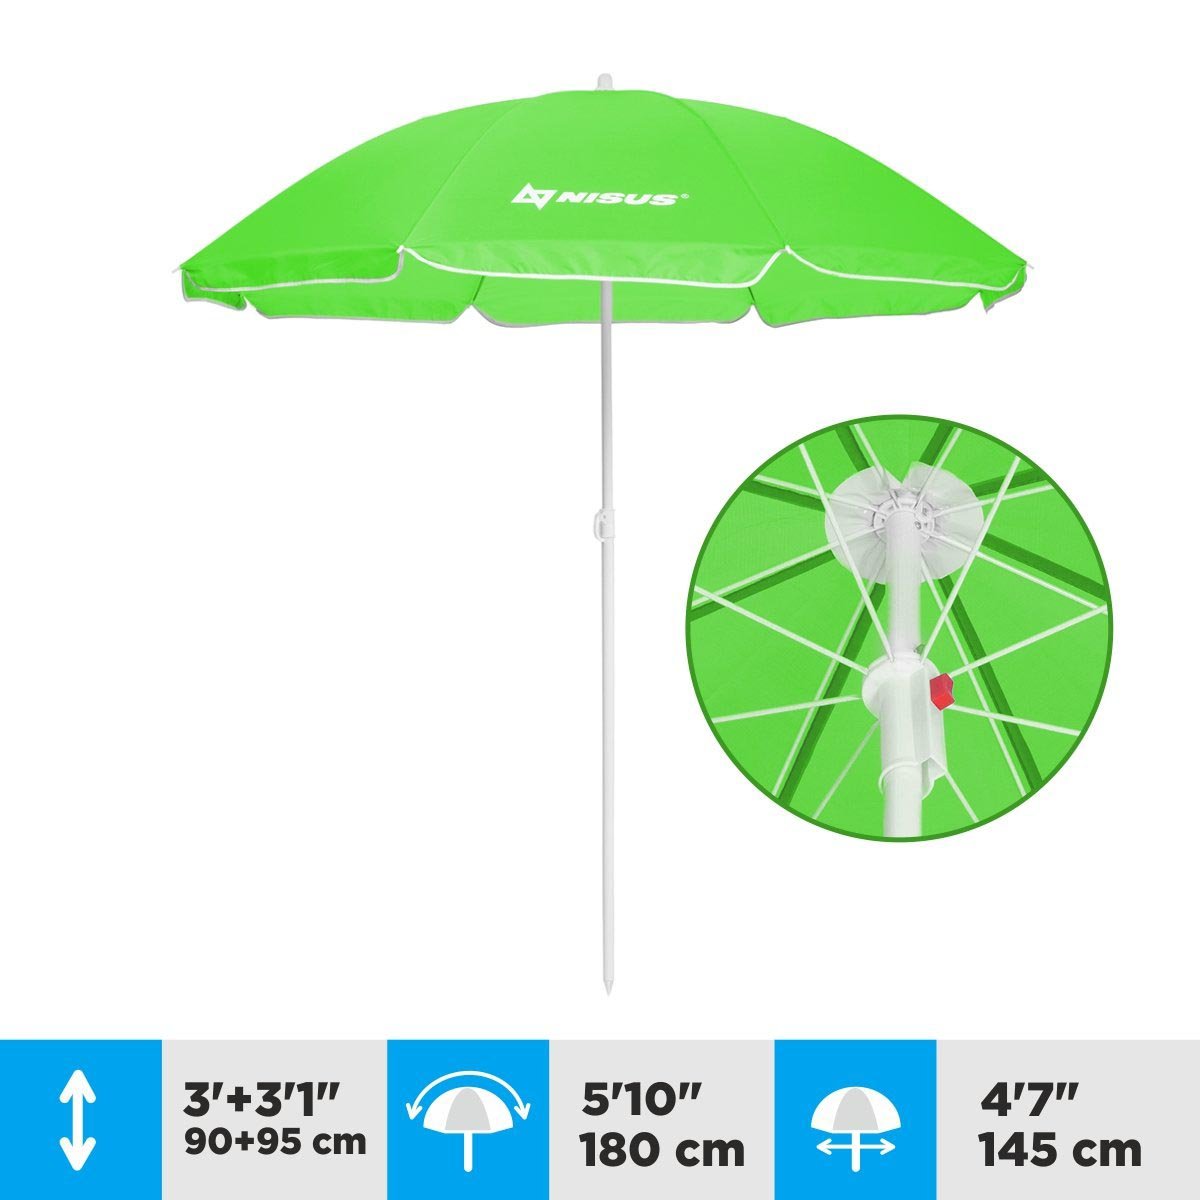 A 4.7 ft Green Folding Beach Umbrella is 6.1 feet high